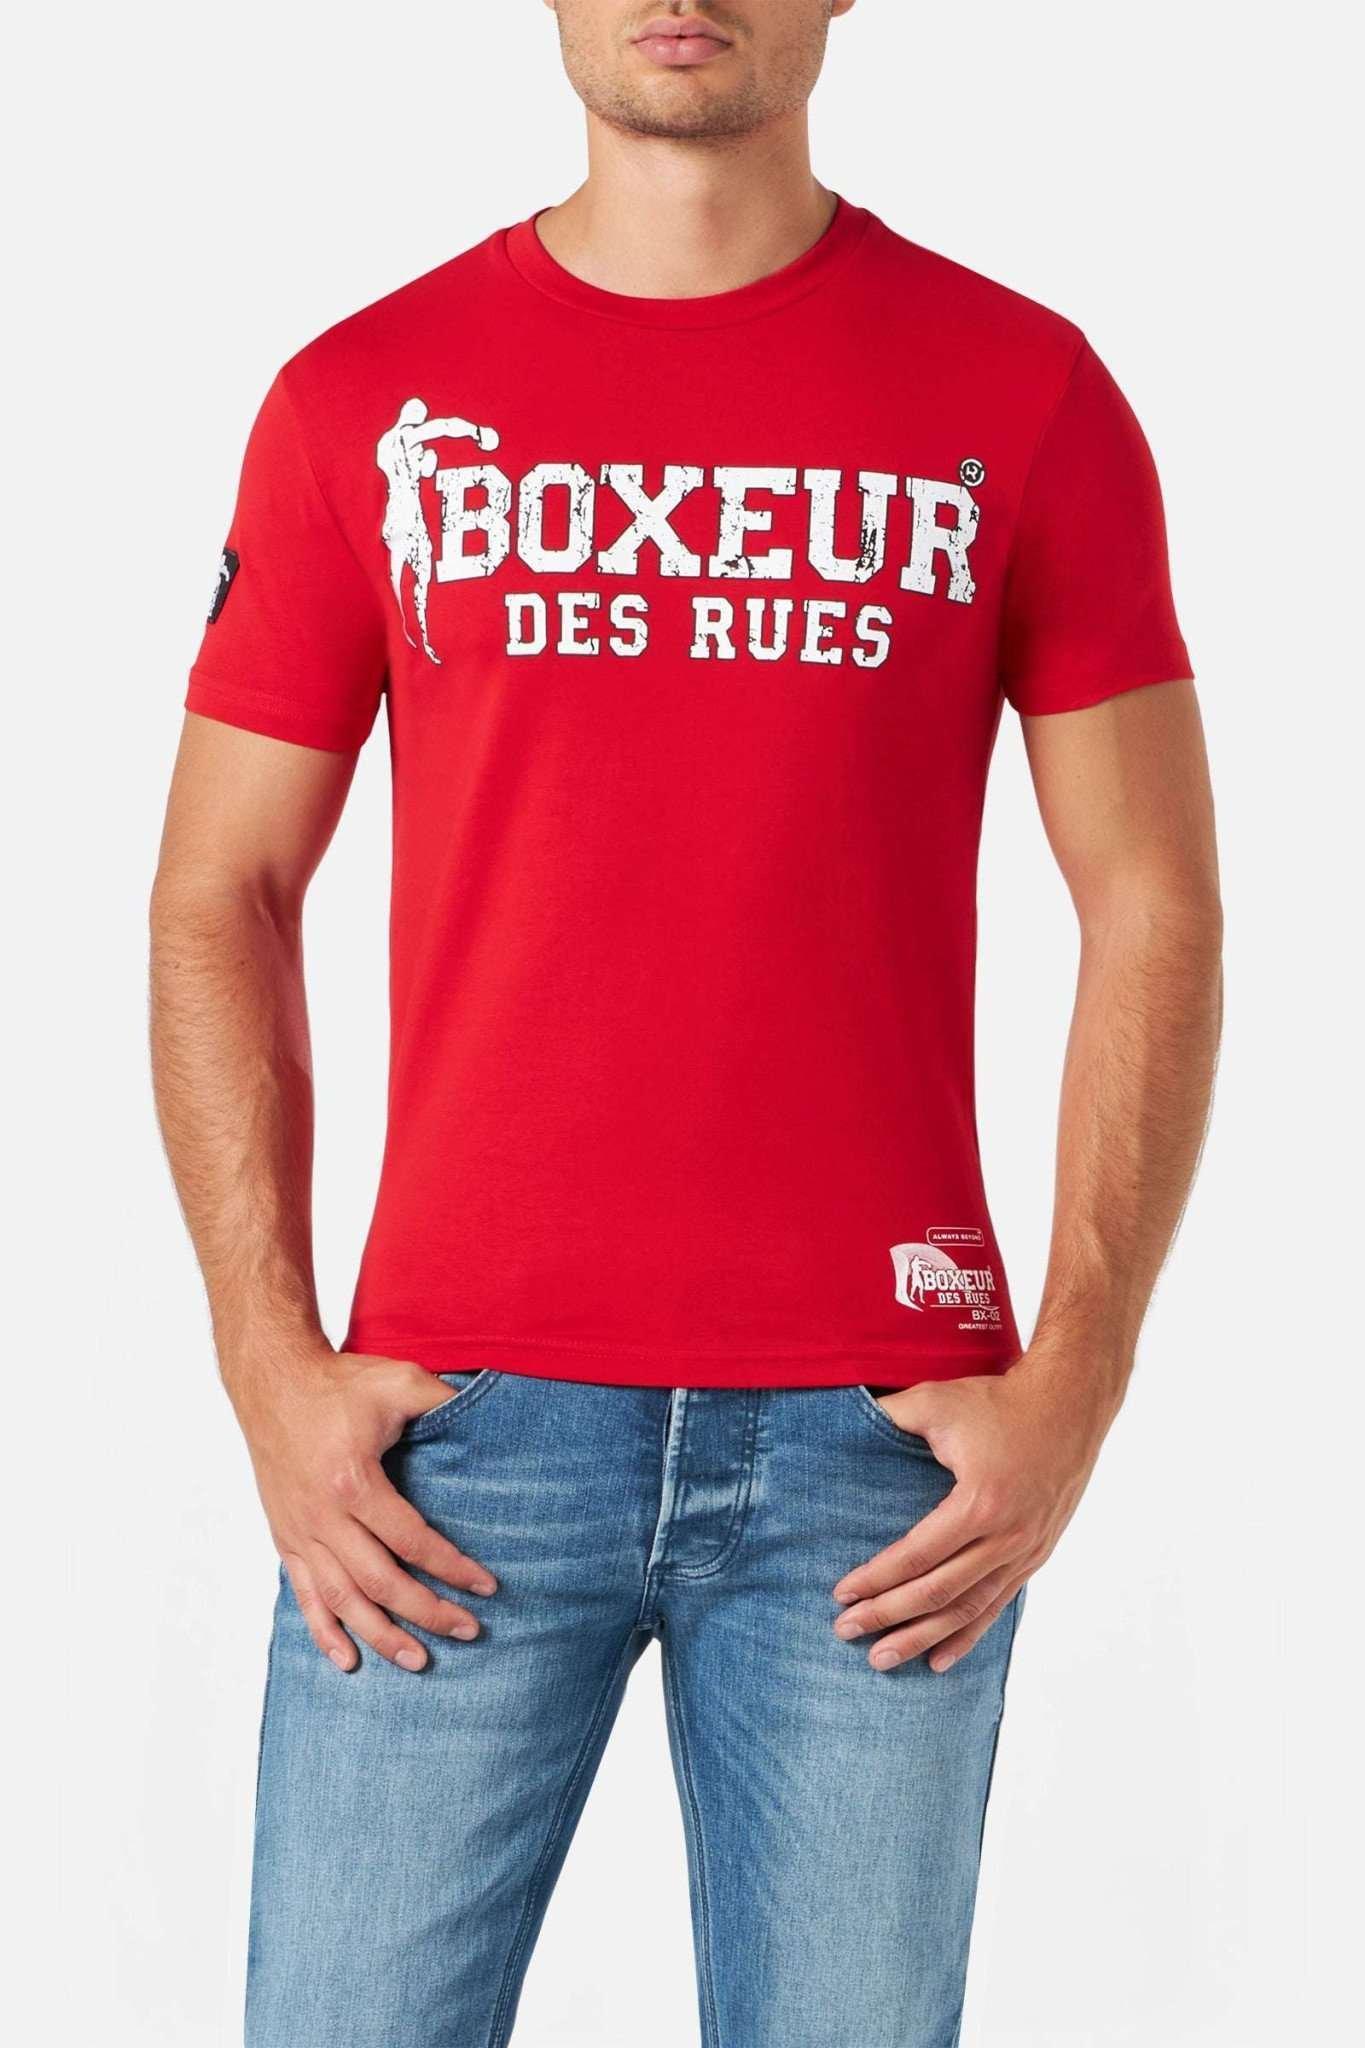 T-shirts T-shirt Boxeur Street 2 Herren Rot Bunt L von BOXEUR DES RUES